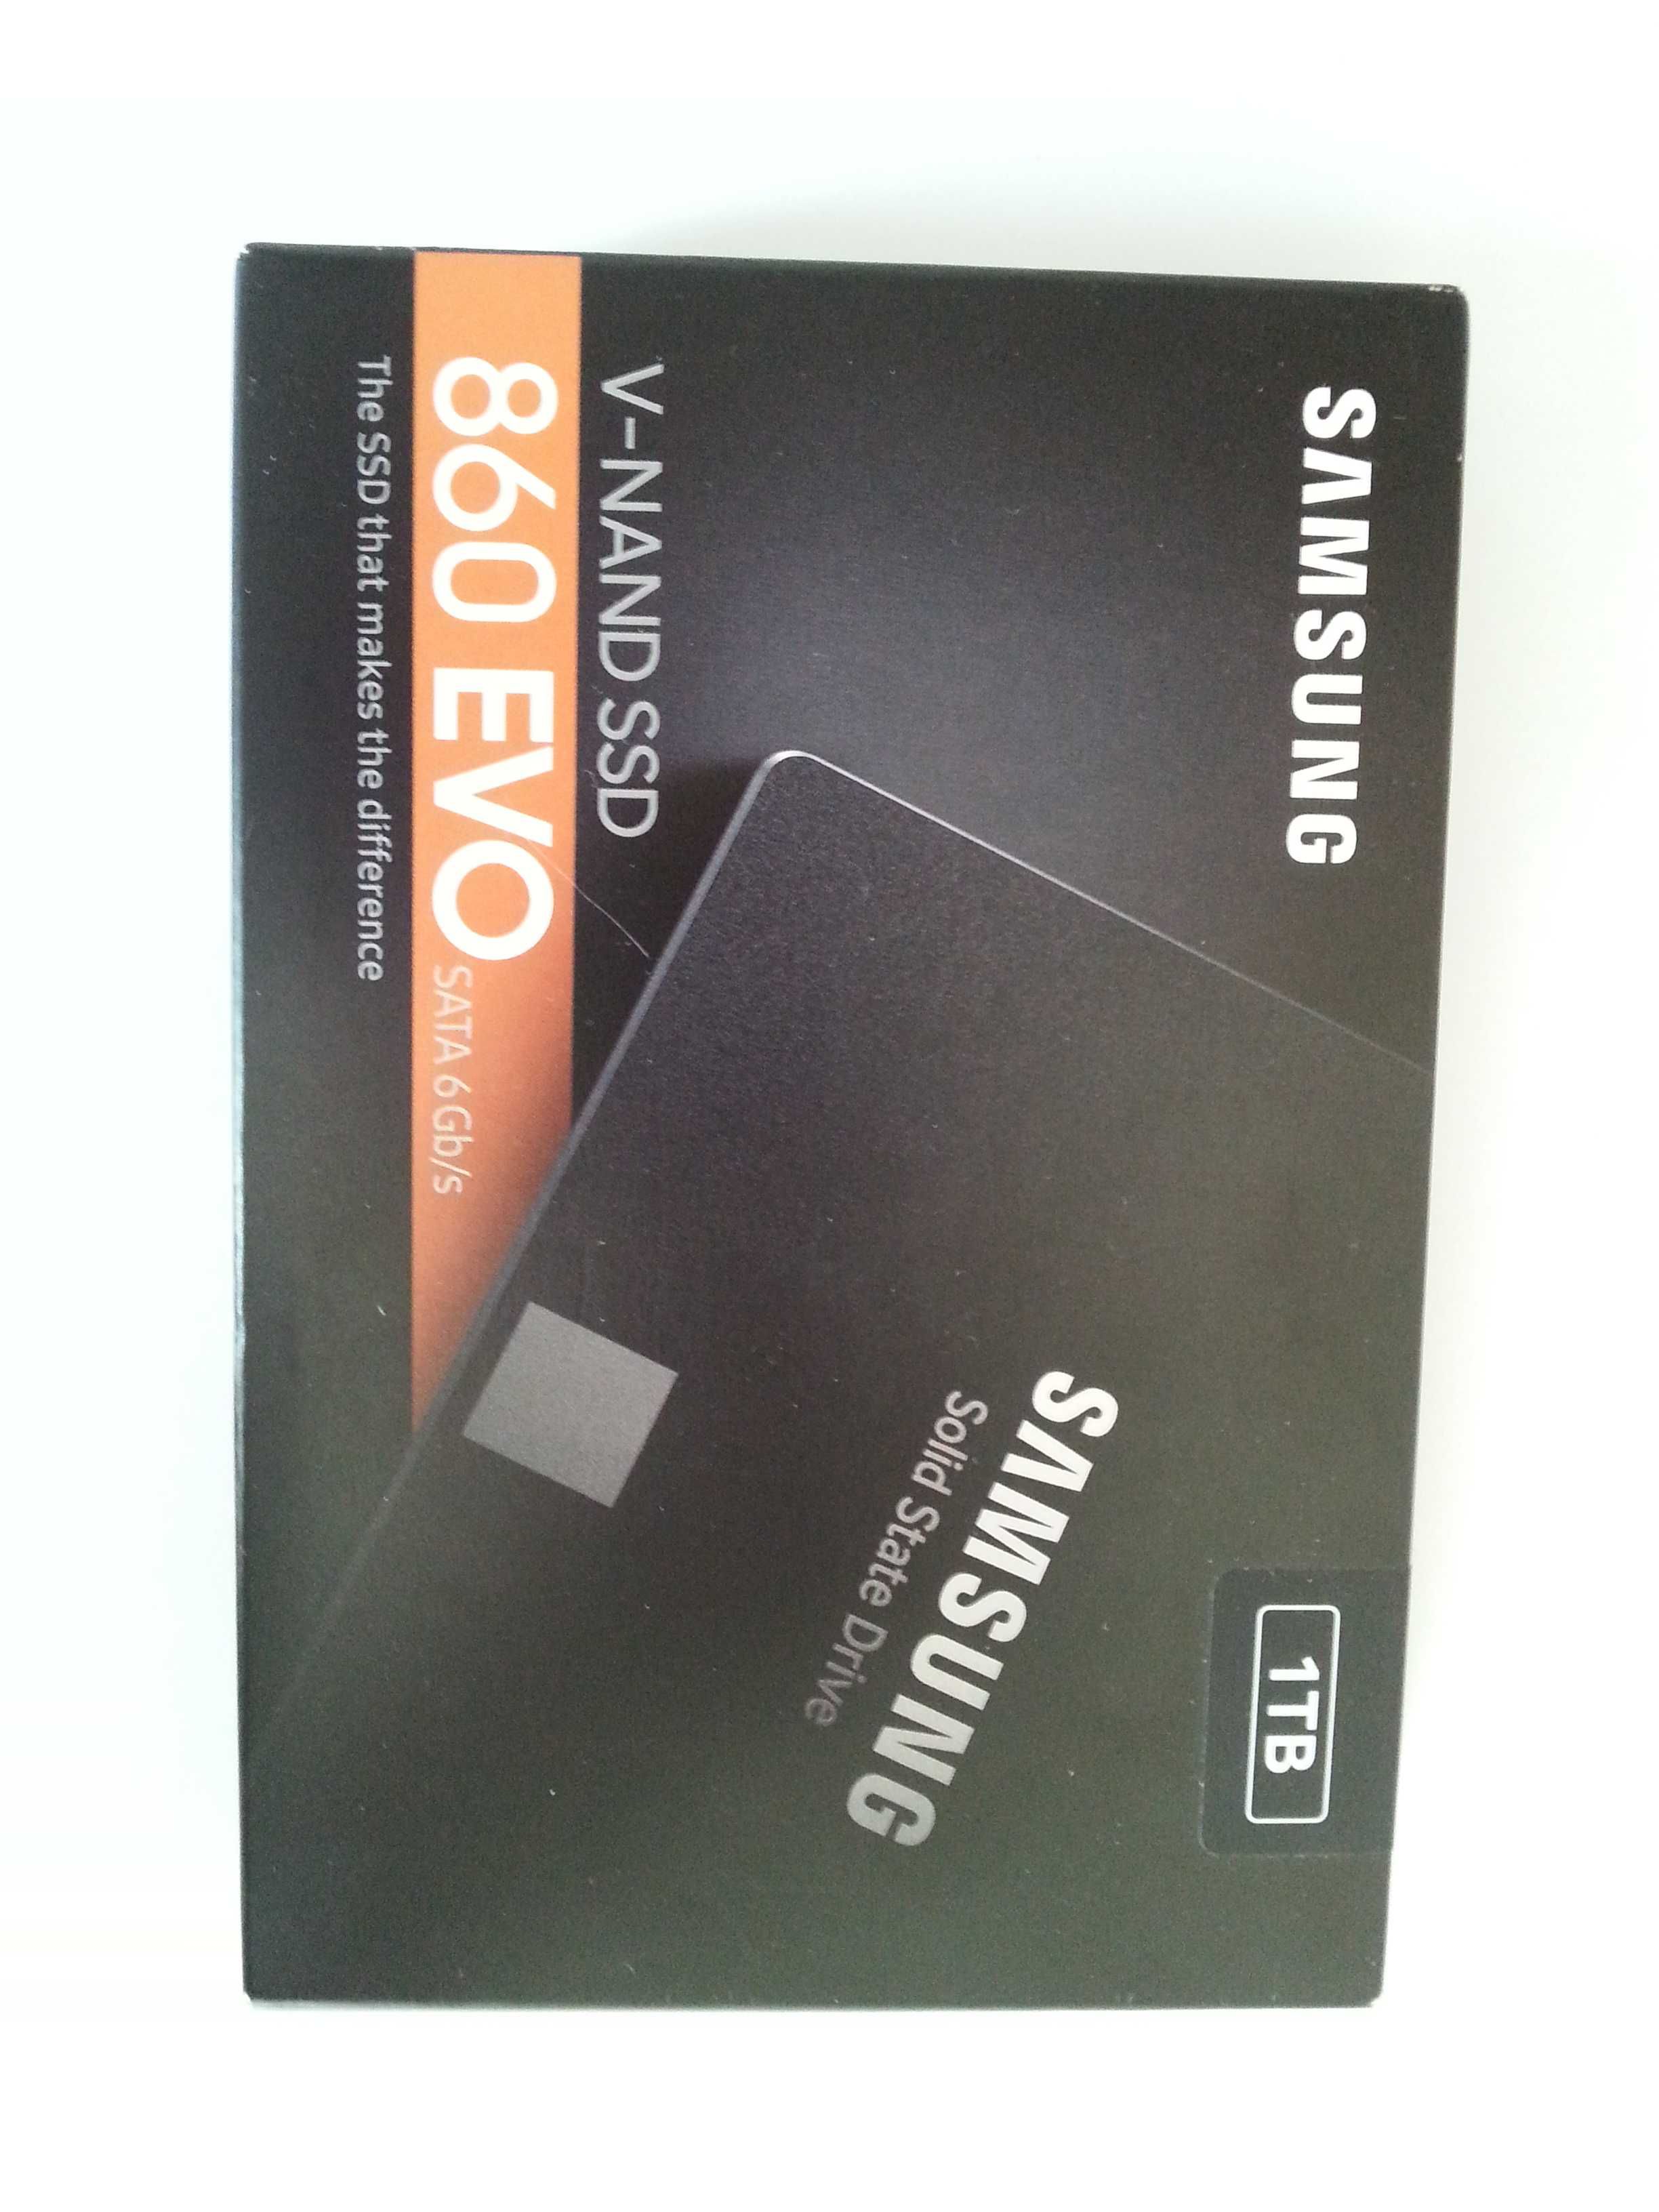 Nowy,zapakowany-Samsung 860 EVO-dysk SSD-1TB.Polecam